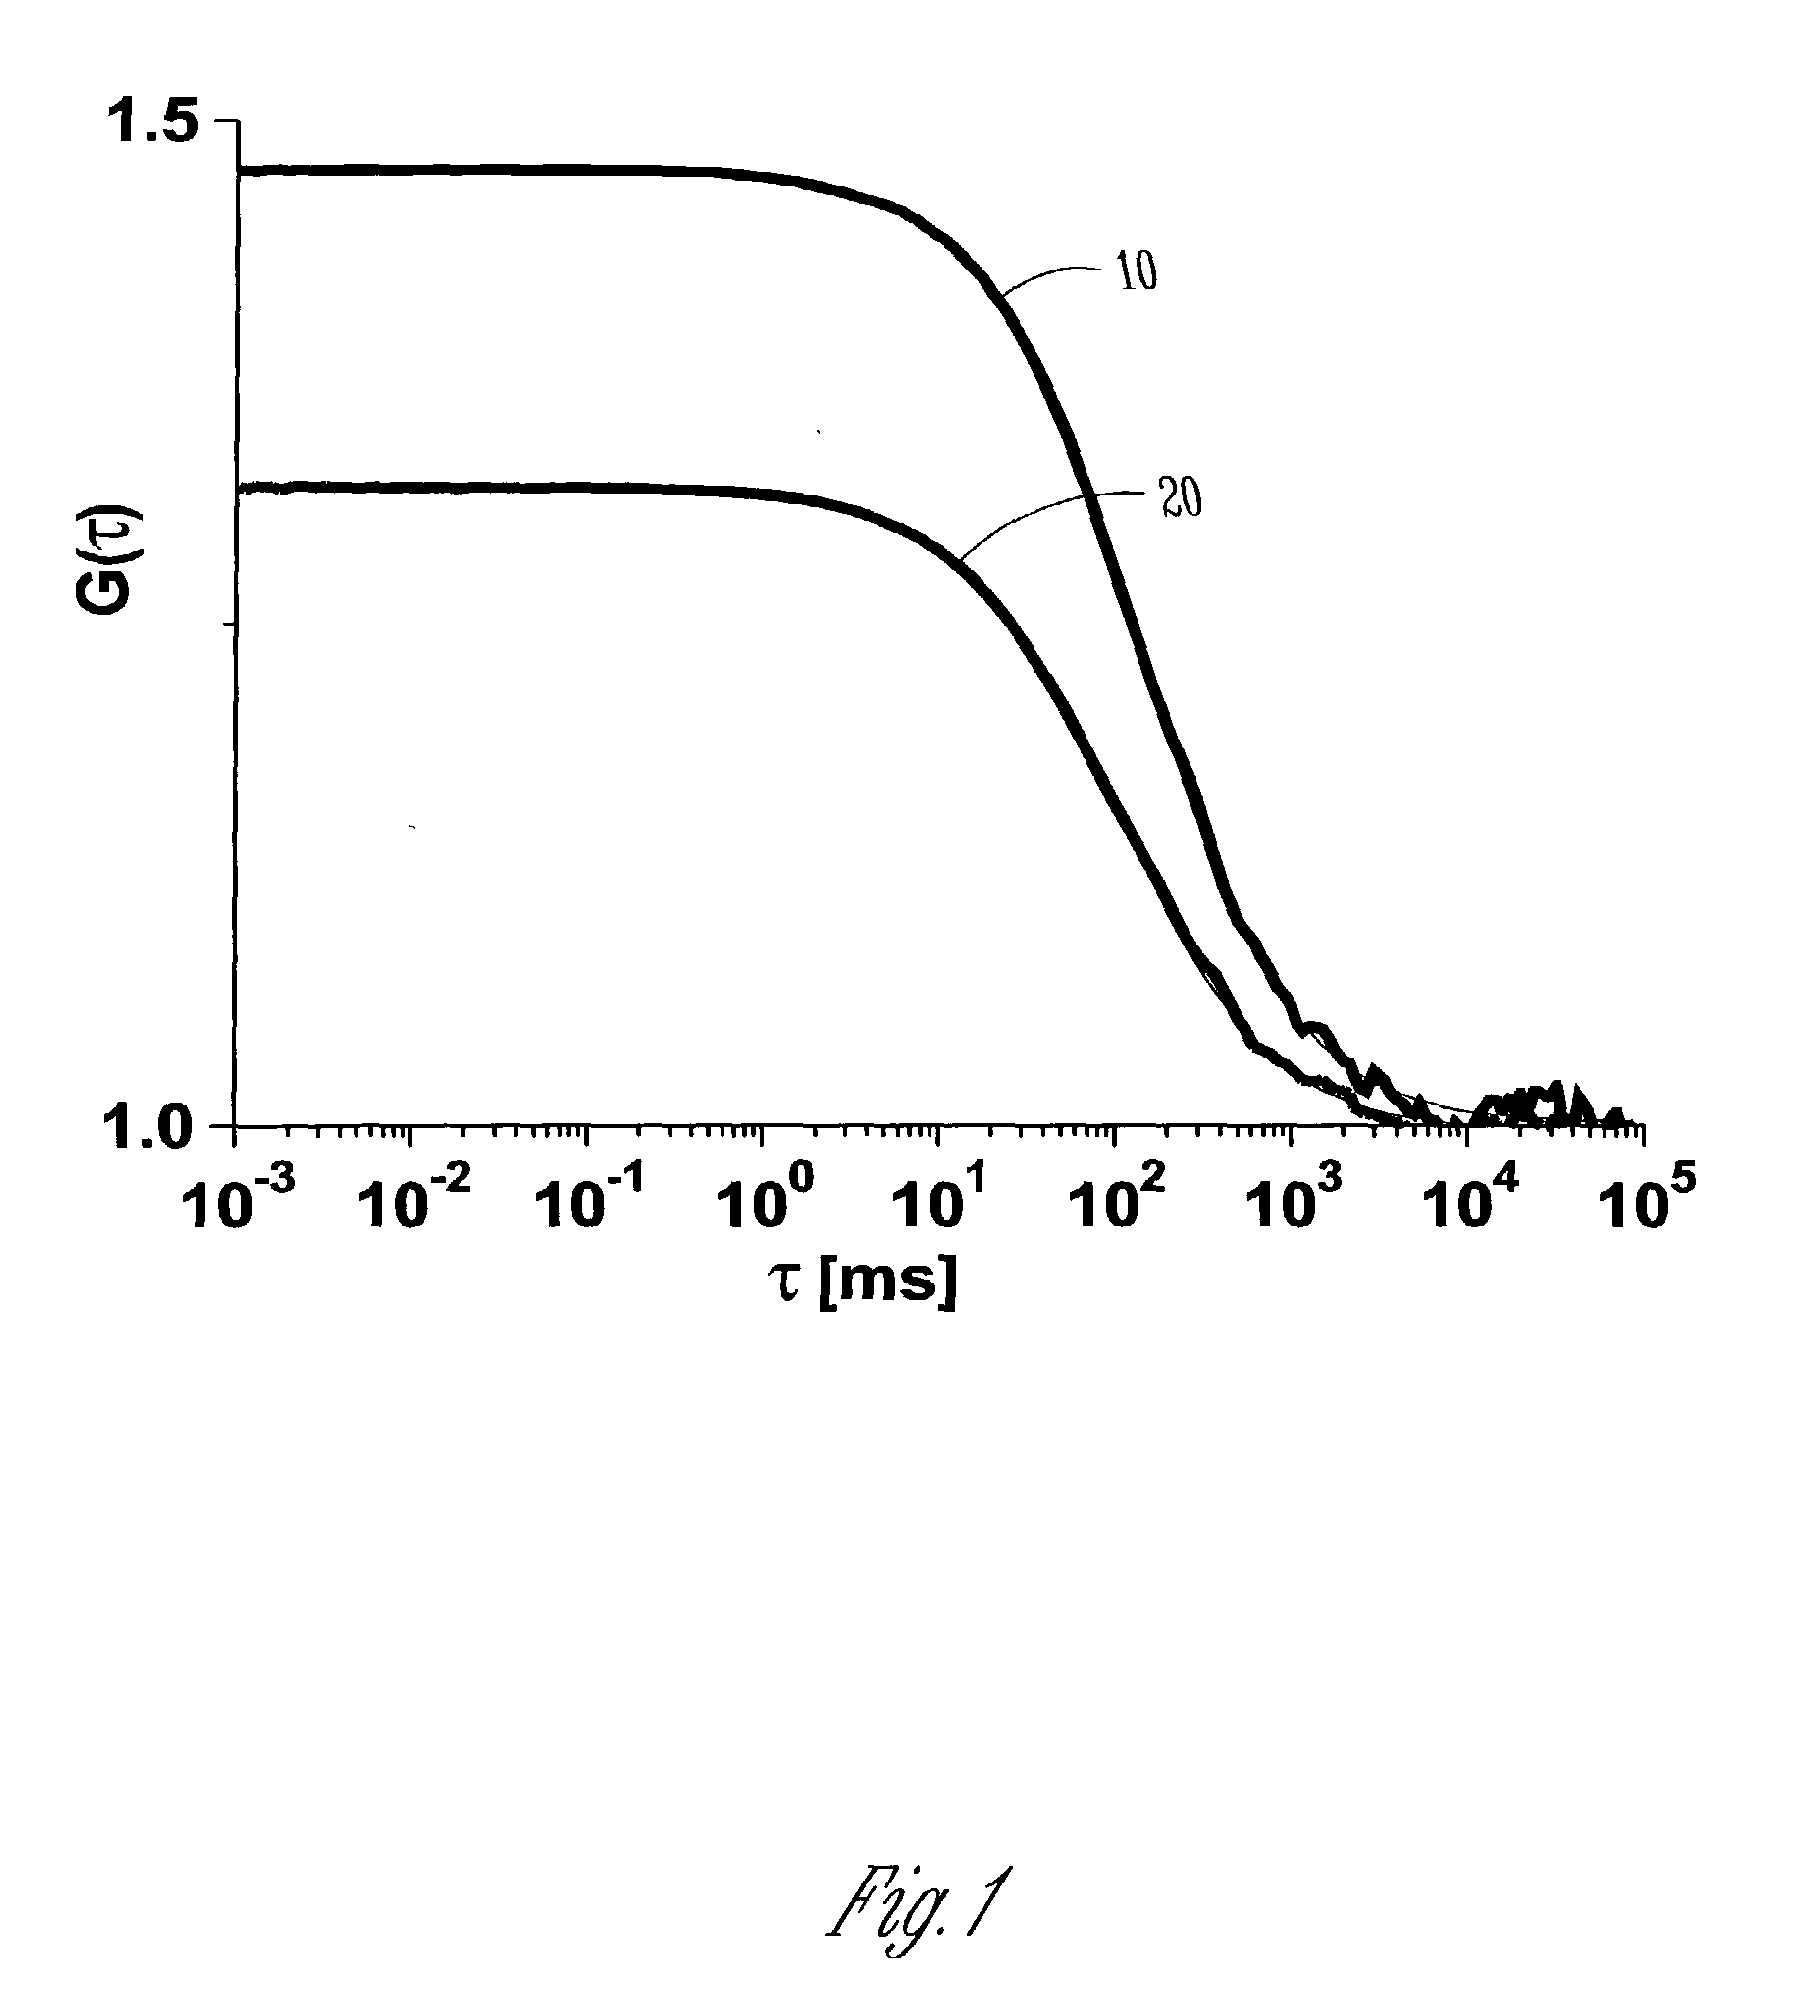 Fluorescent Silica-Based Nanoparticles